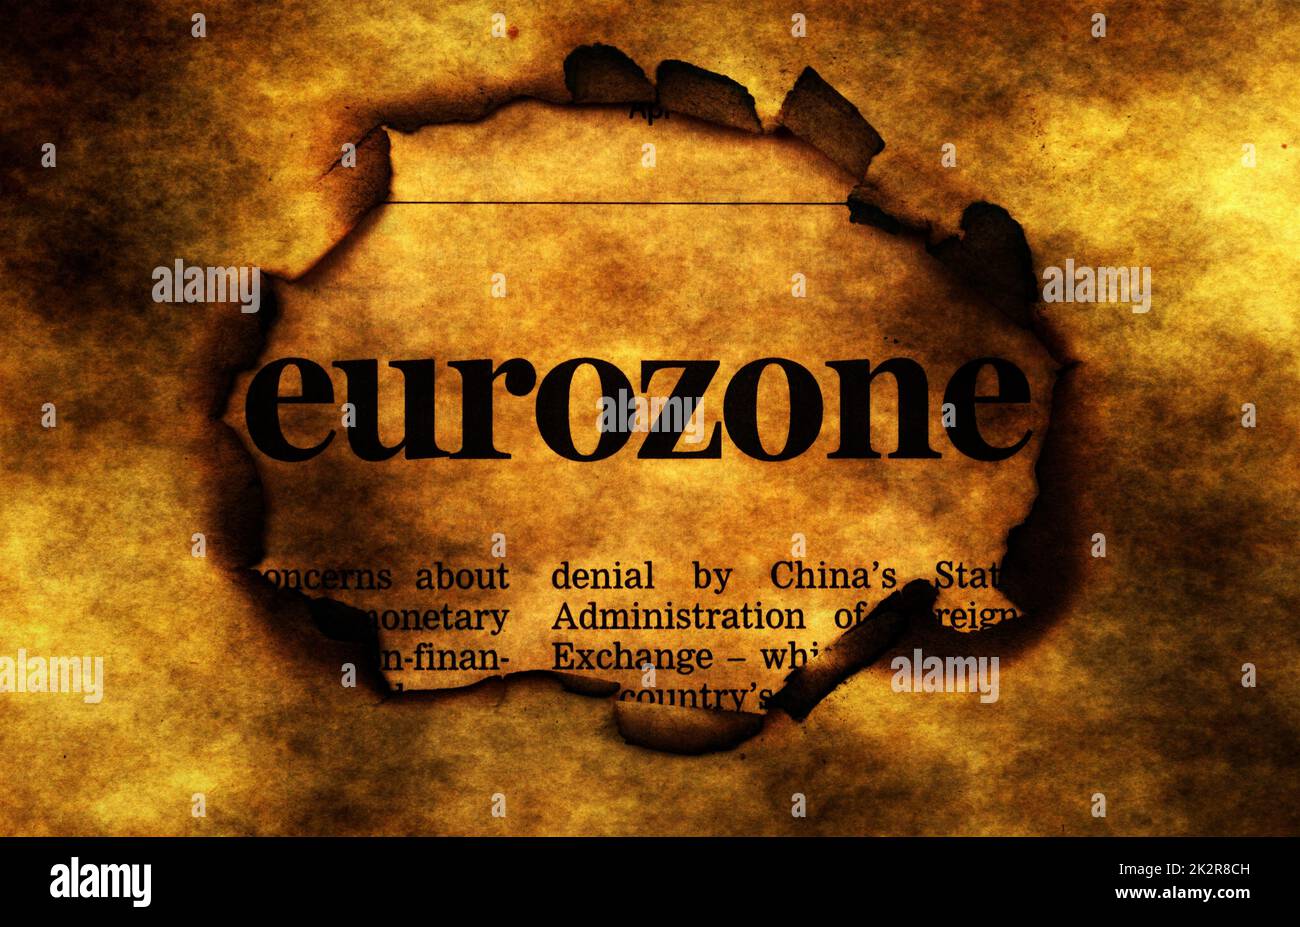 Eurozone on burning paper hole Stock Photo